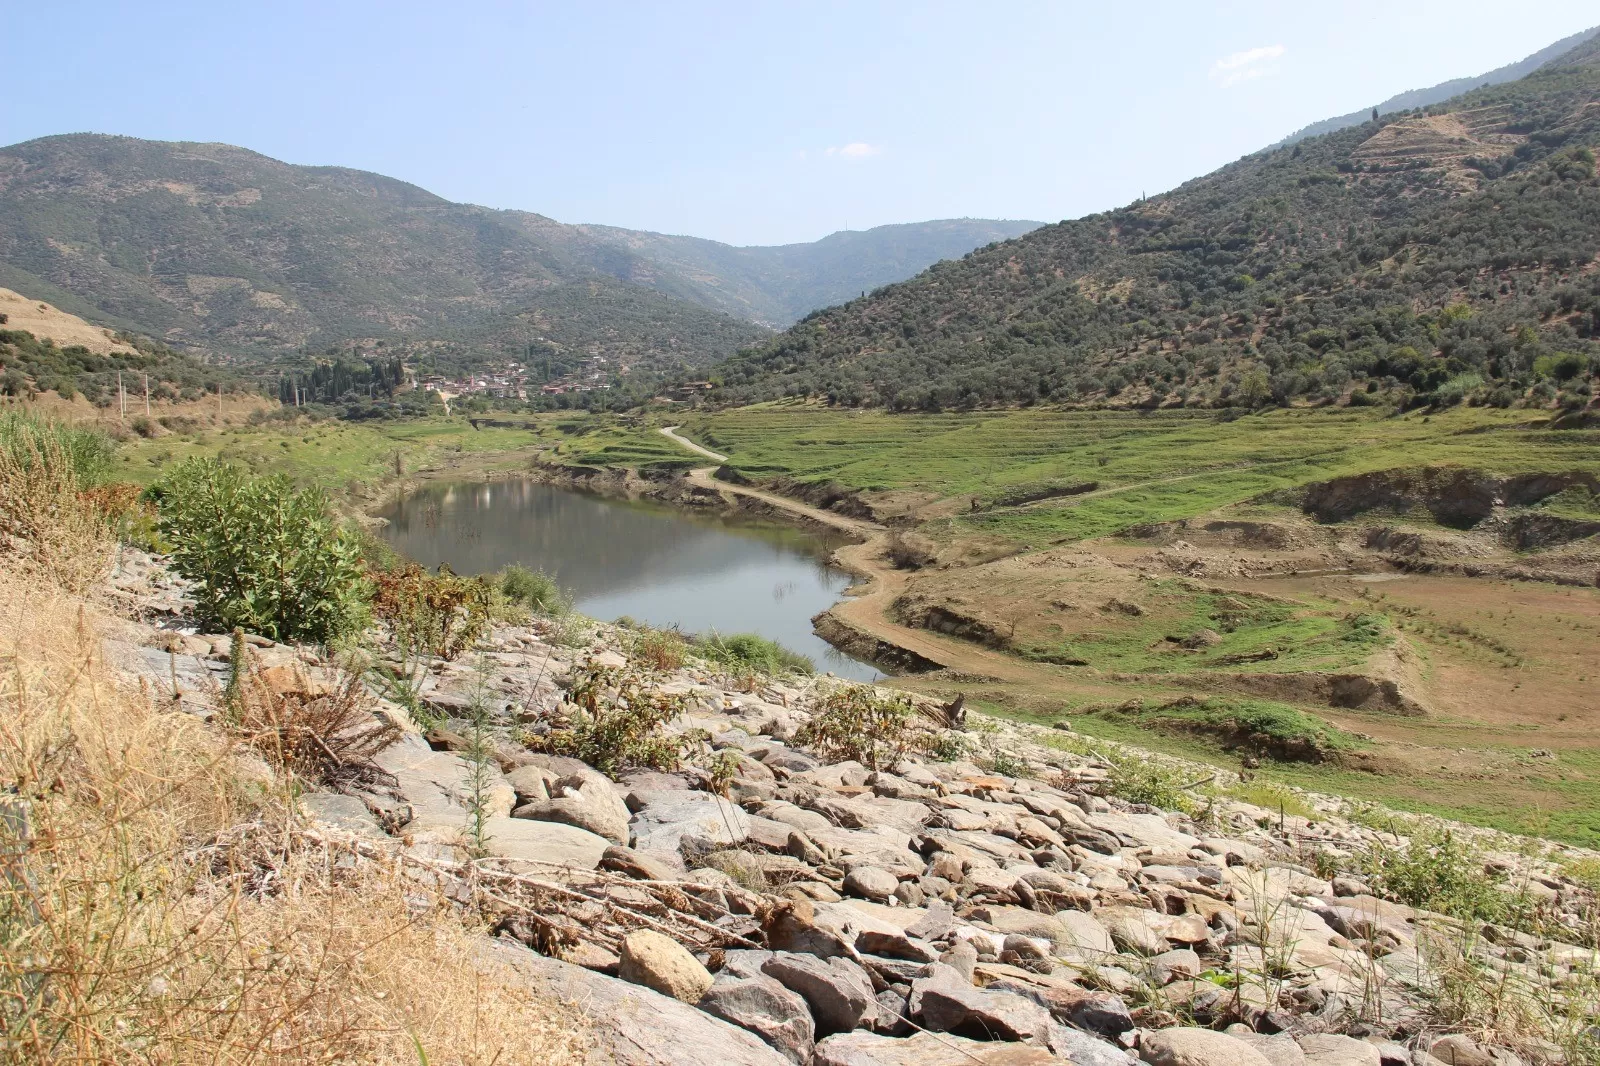 İzmir'in Beydağ ilçesinde yer alan ve bölgedeki tarım arazilerine hayati su kaynağı sağlayan Beydağ Barajı, uzun süren kuraklık döneminden olumsuz etkilendi. 